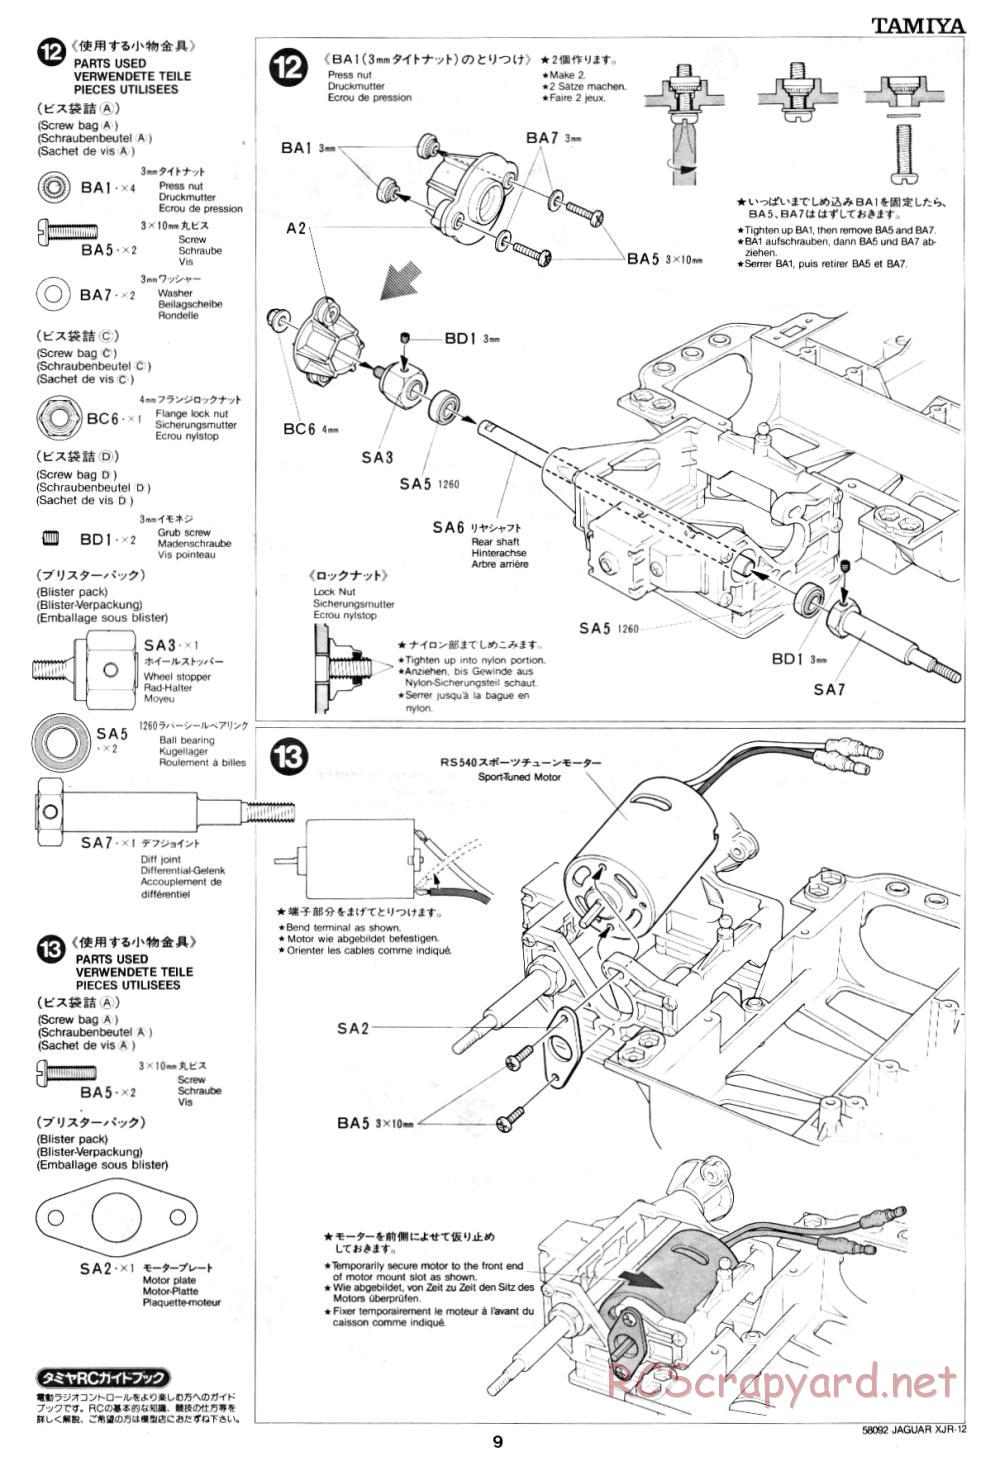 Tamiya - Jaguar XJR-12 - 58092 - Manual - Page 9